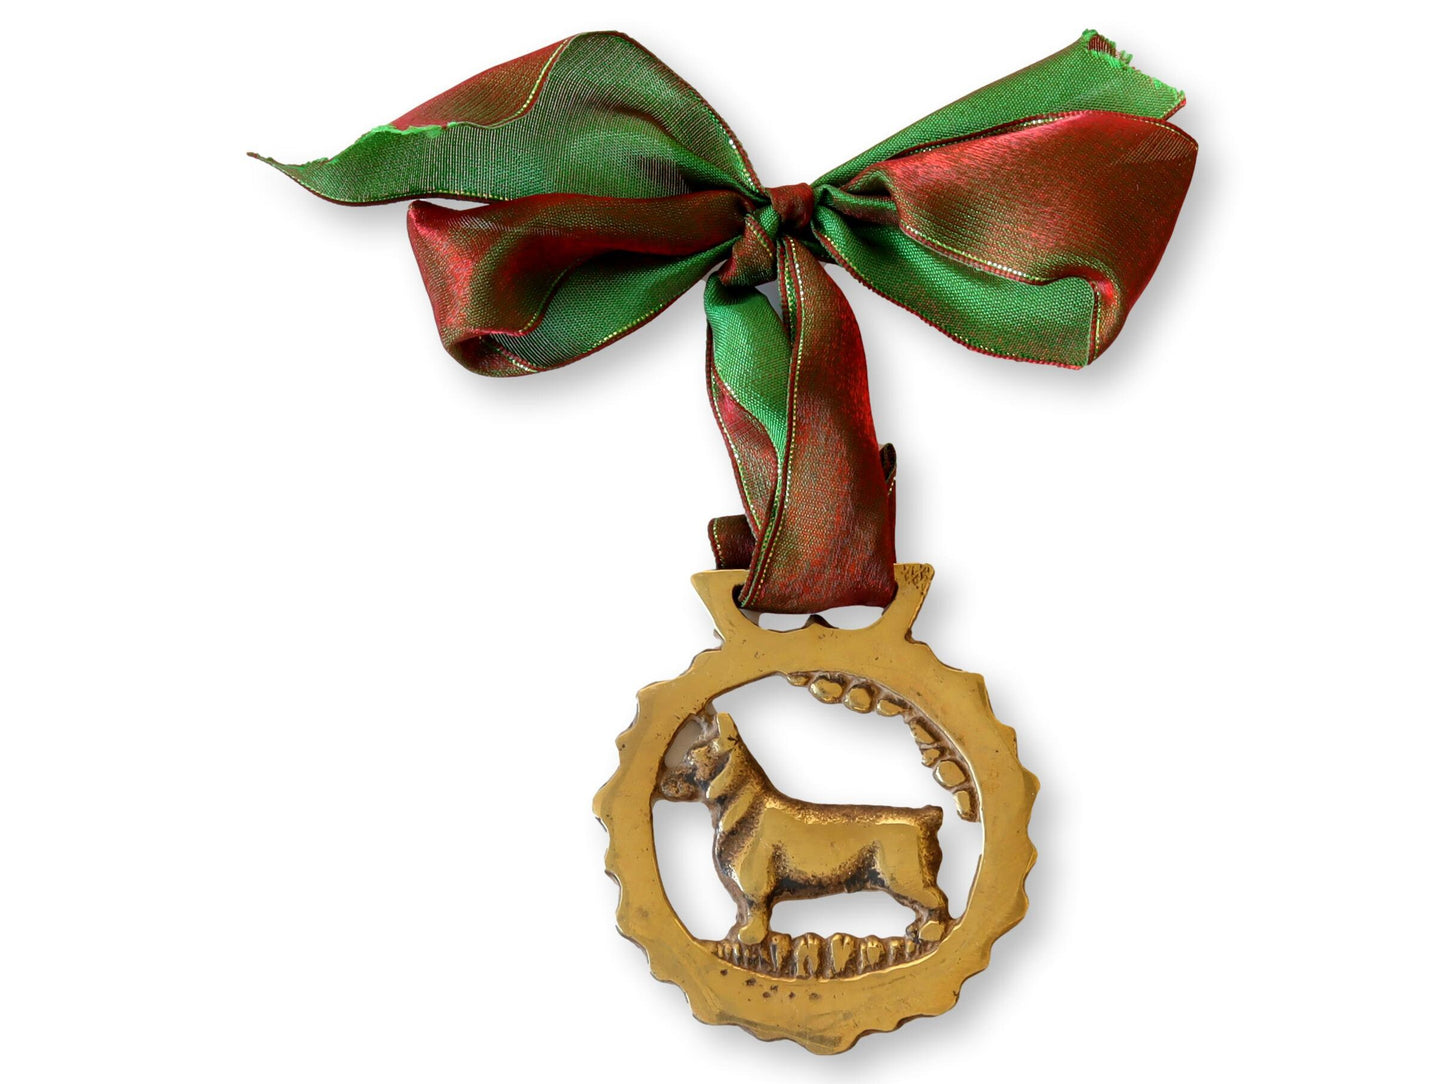 Antique English Horse Brass Christmas Ornament, Corgi